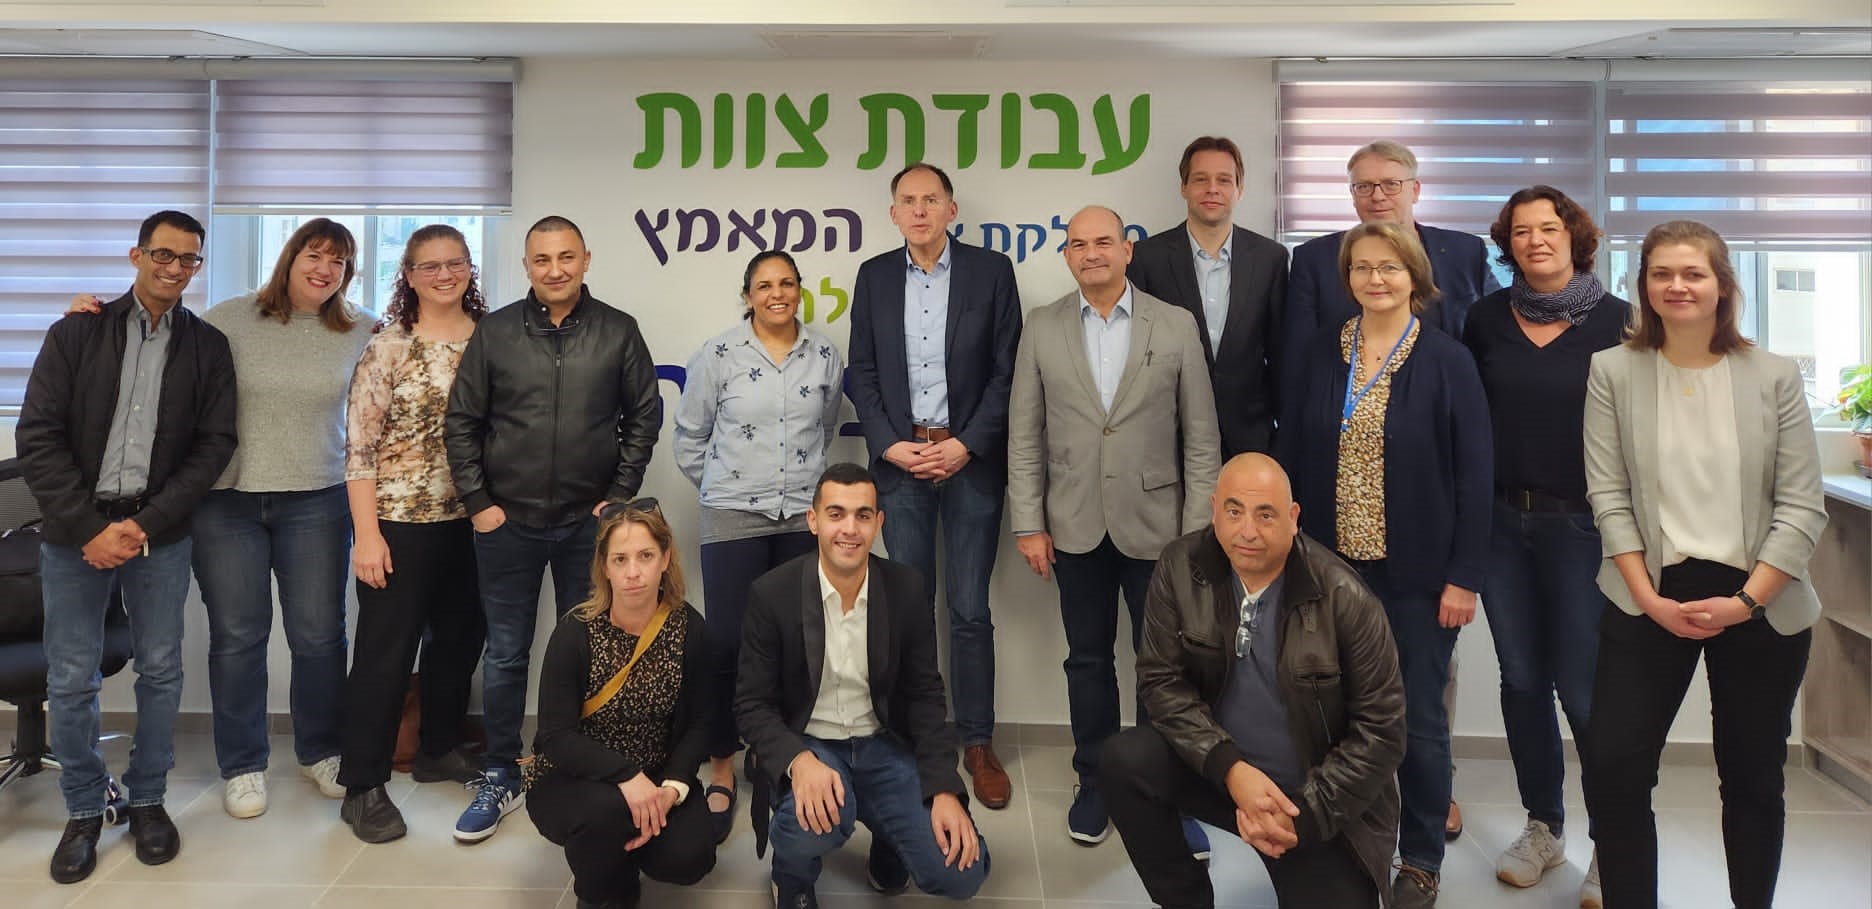 Projektstart zur Verbesserung der Lebensmittelsicherheit von Fisch und Fischereierzeugnissen in Israel